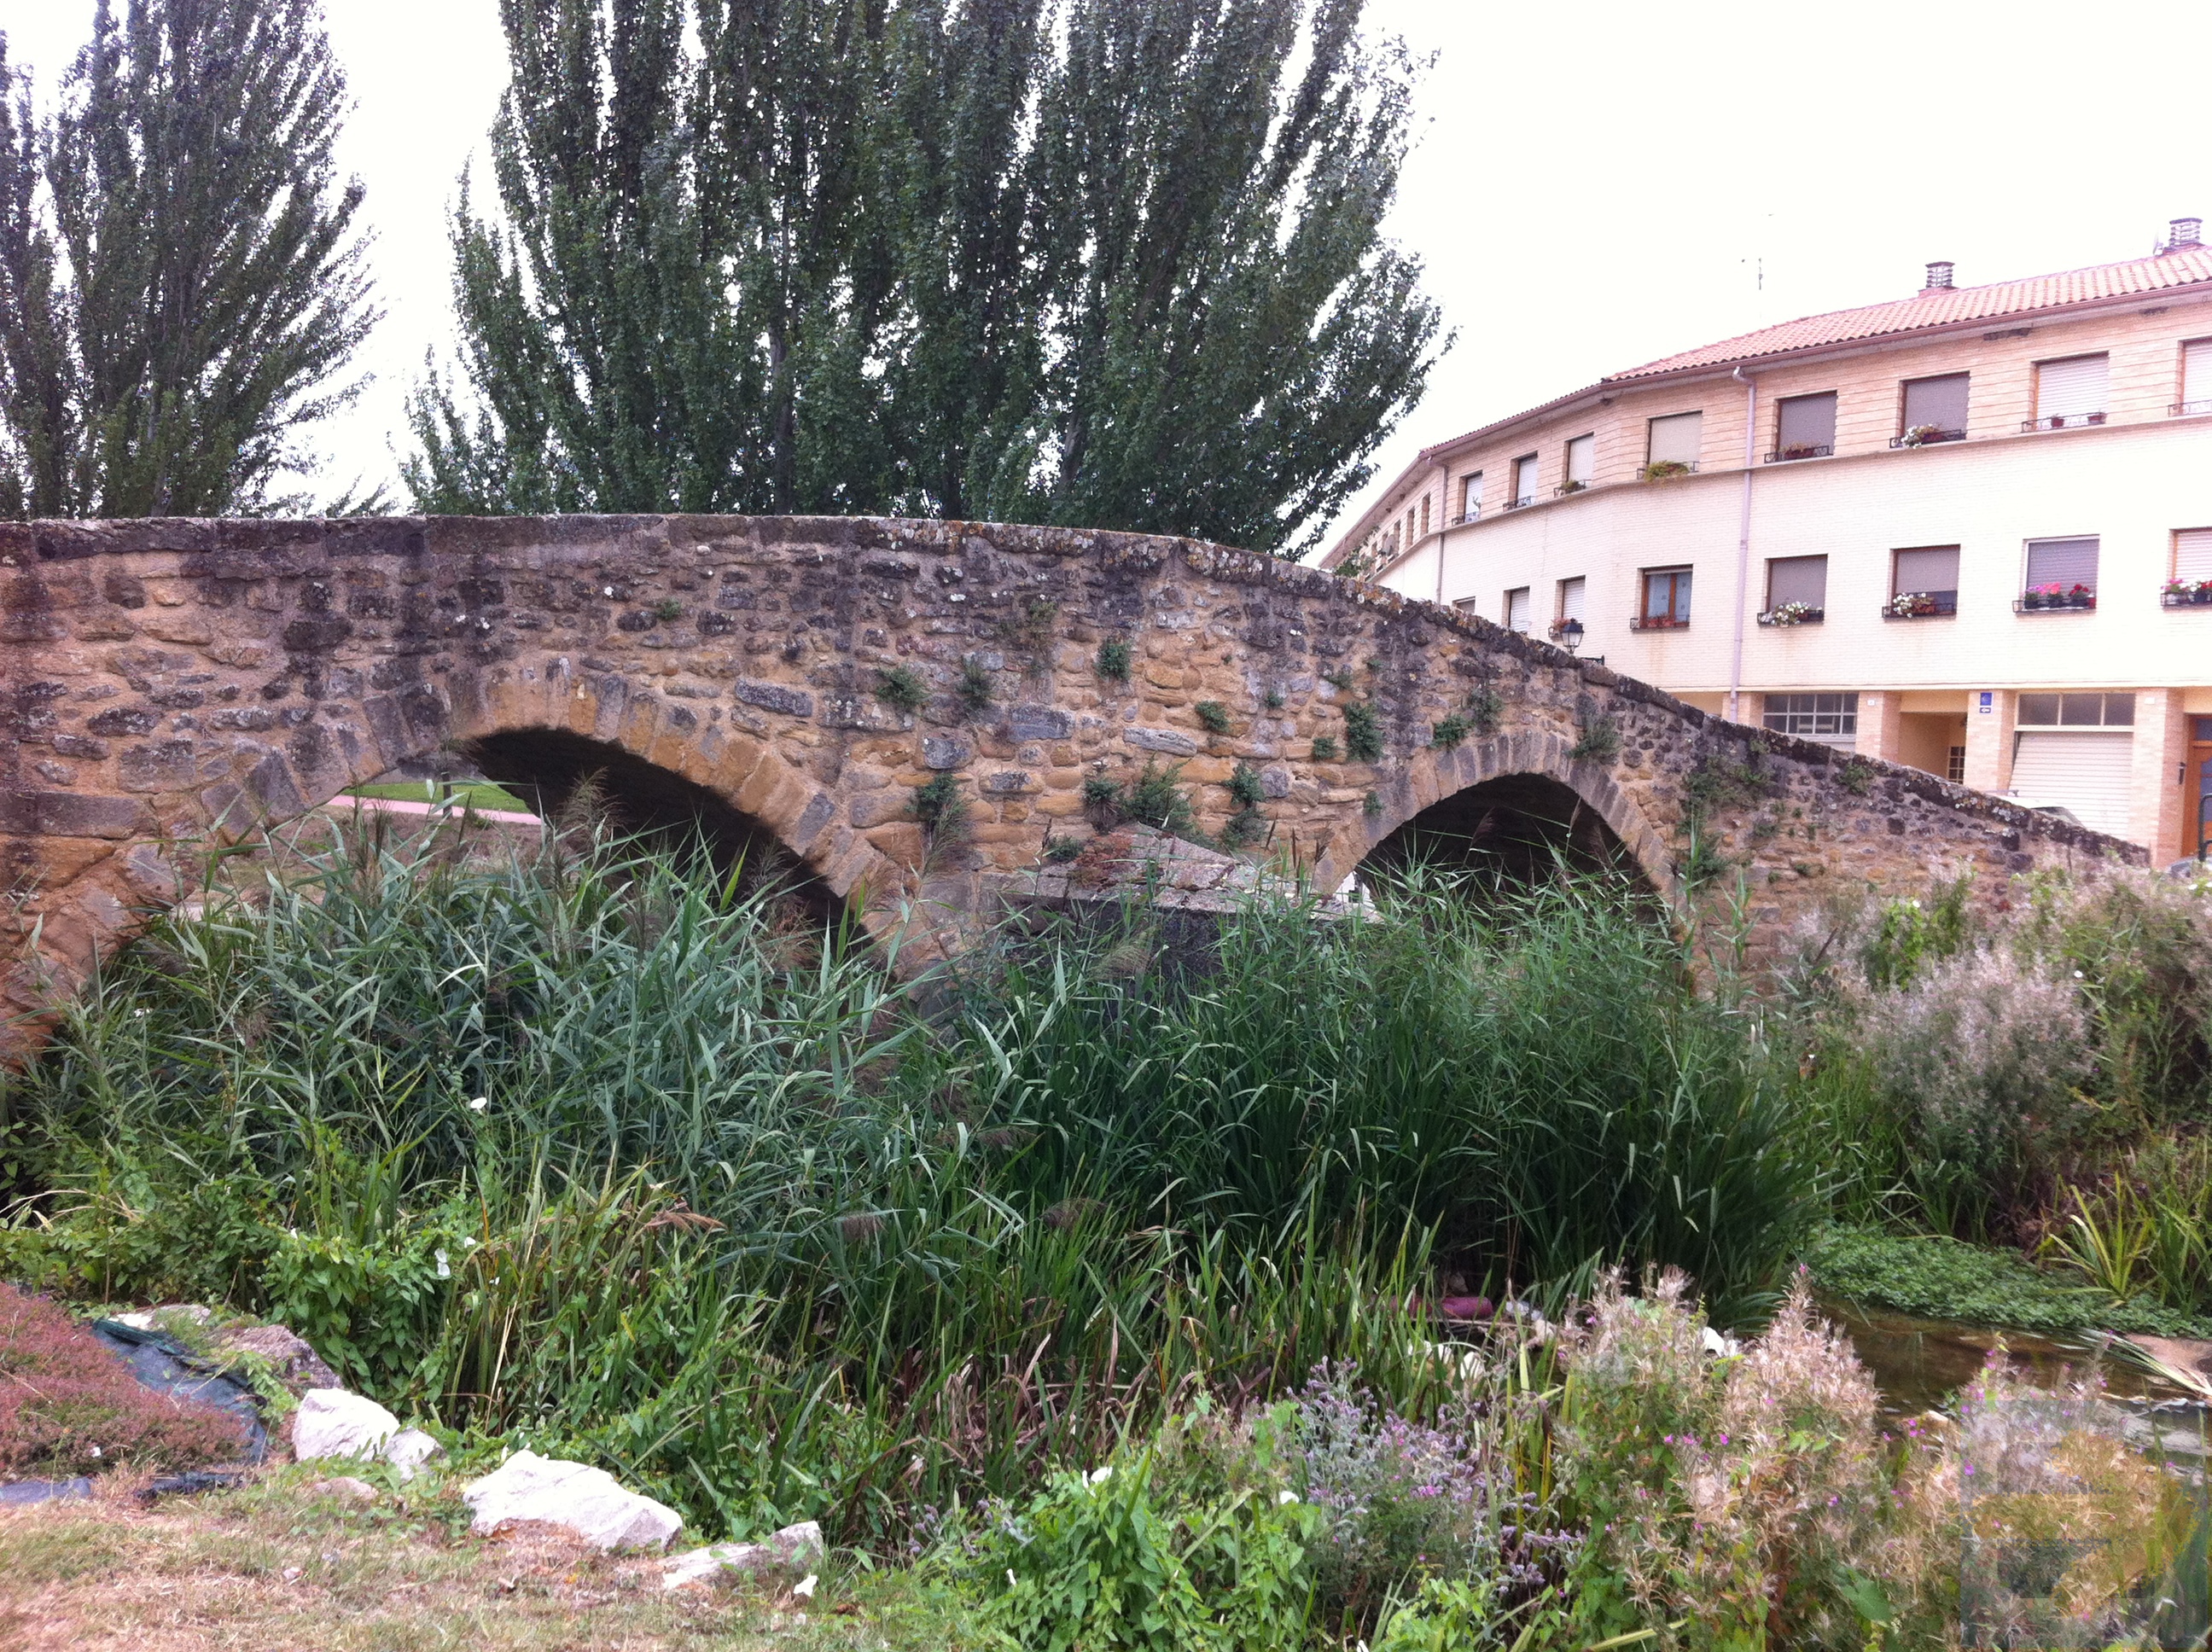 Bridge at Villatuerta